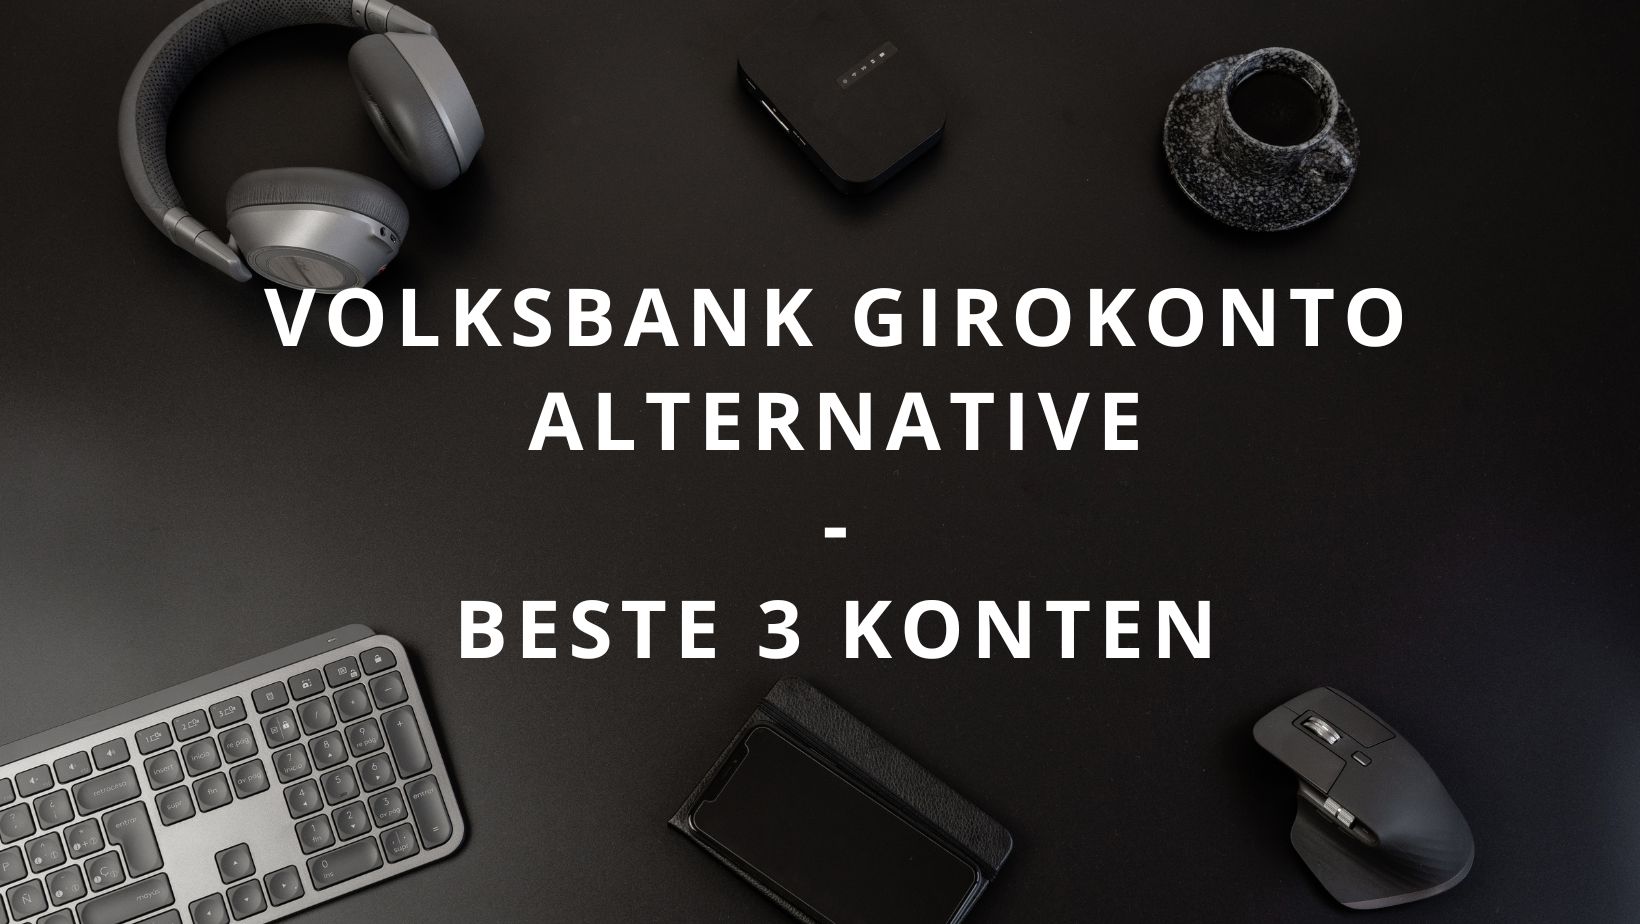 Titelbild zum Beitrag: "Volksbank Girokonto Alternative Beste 3 Konten"